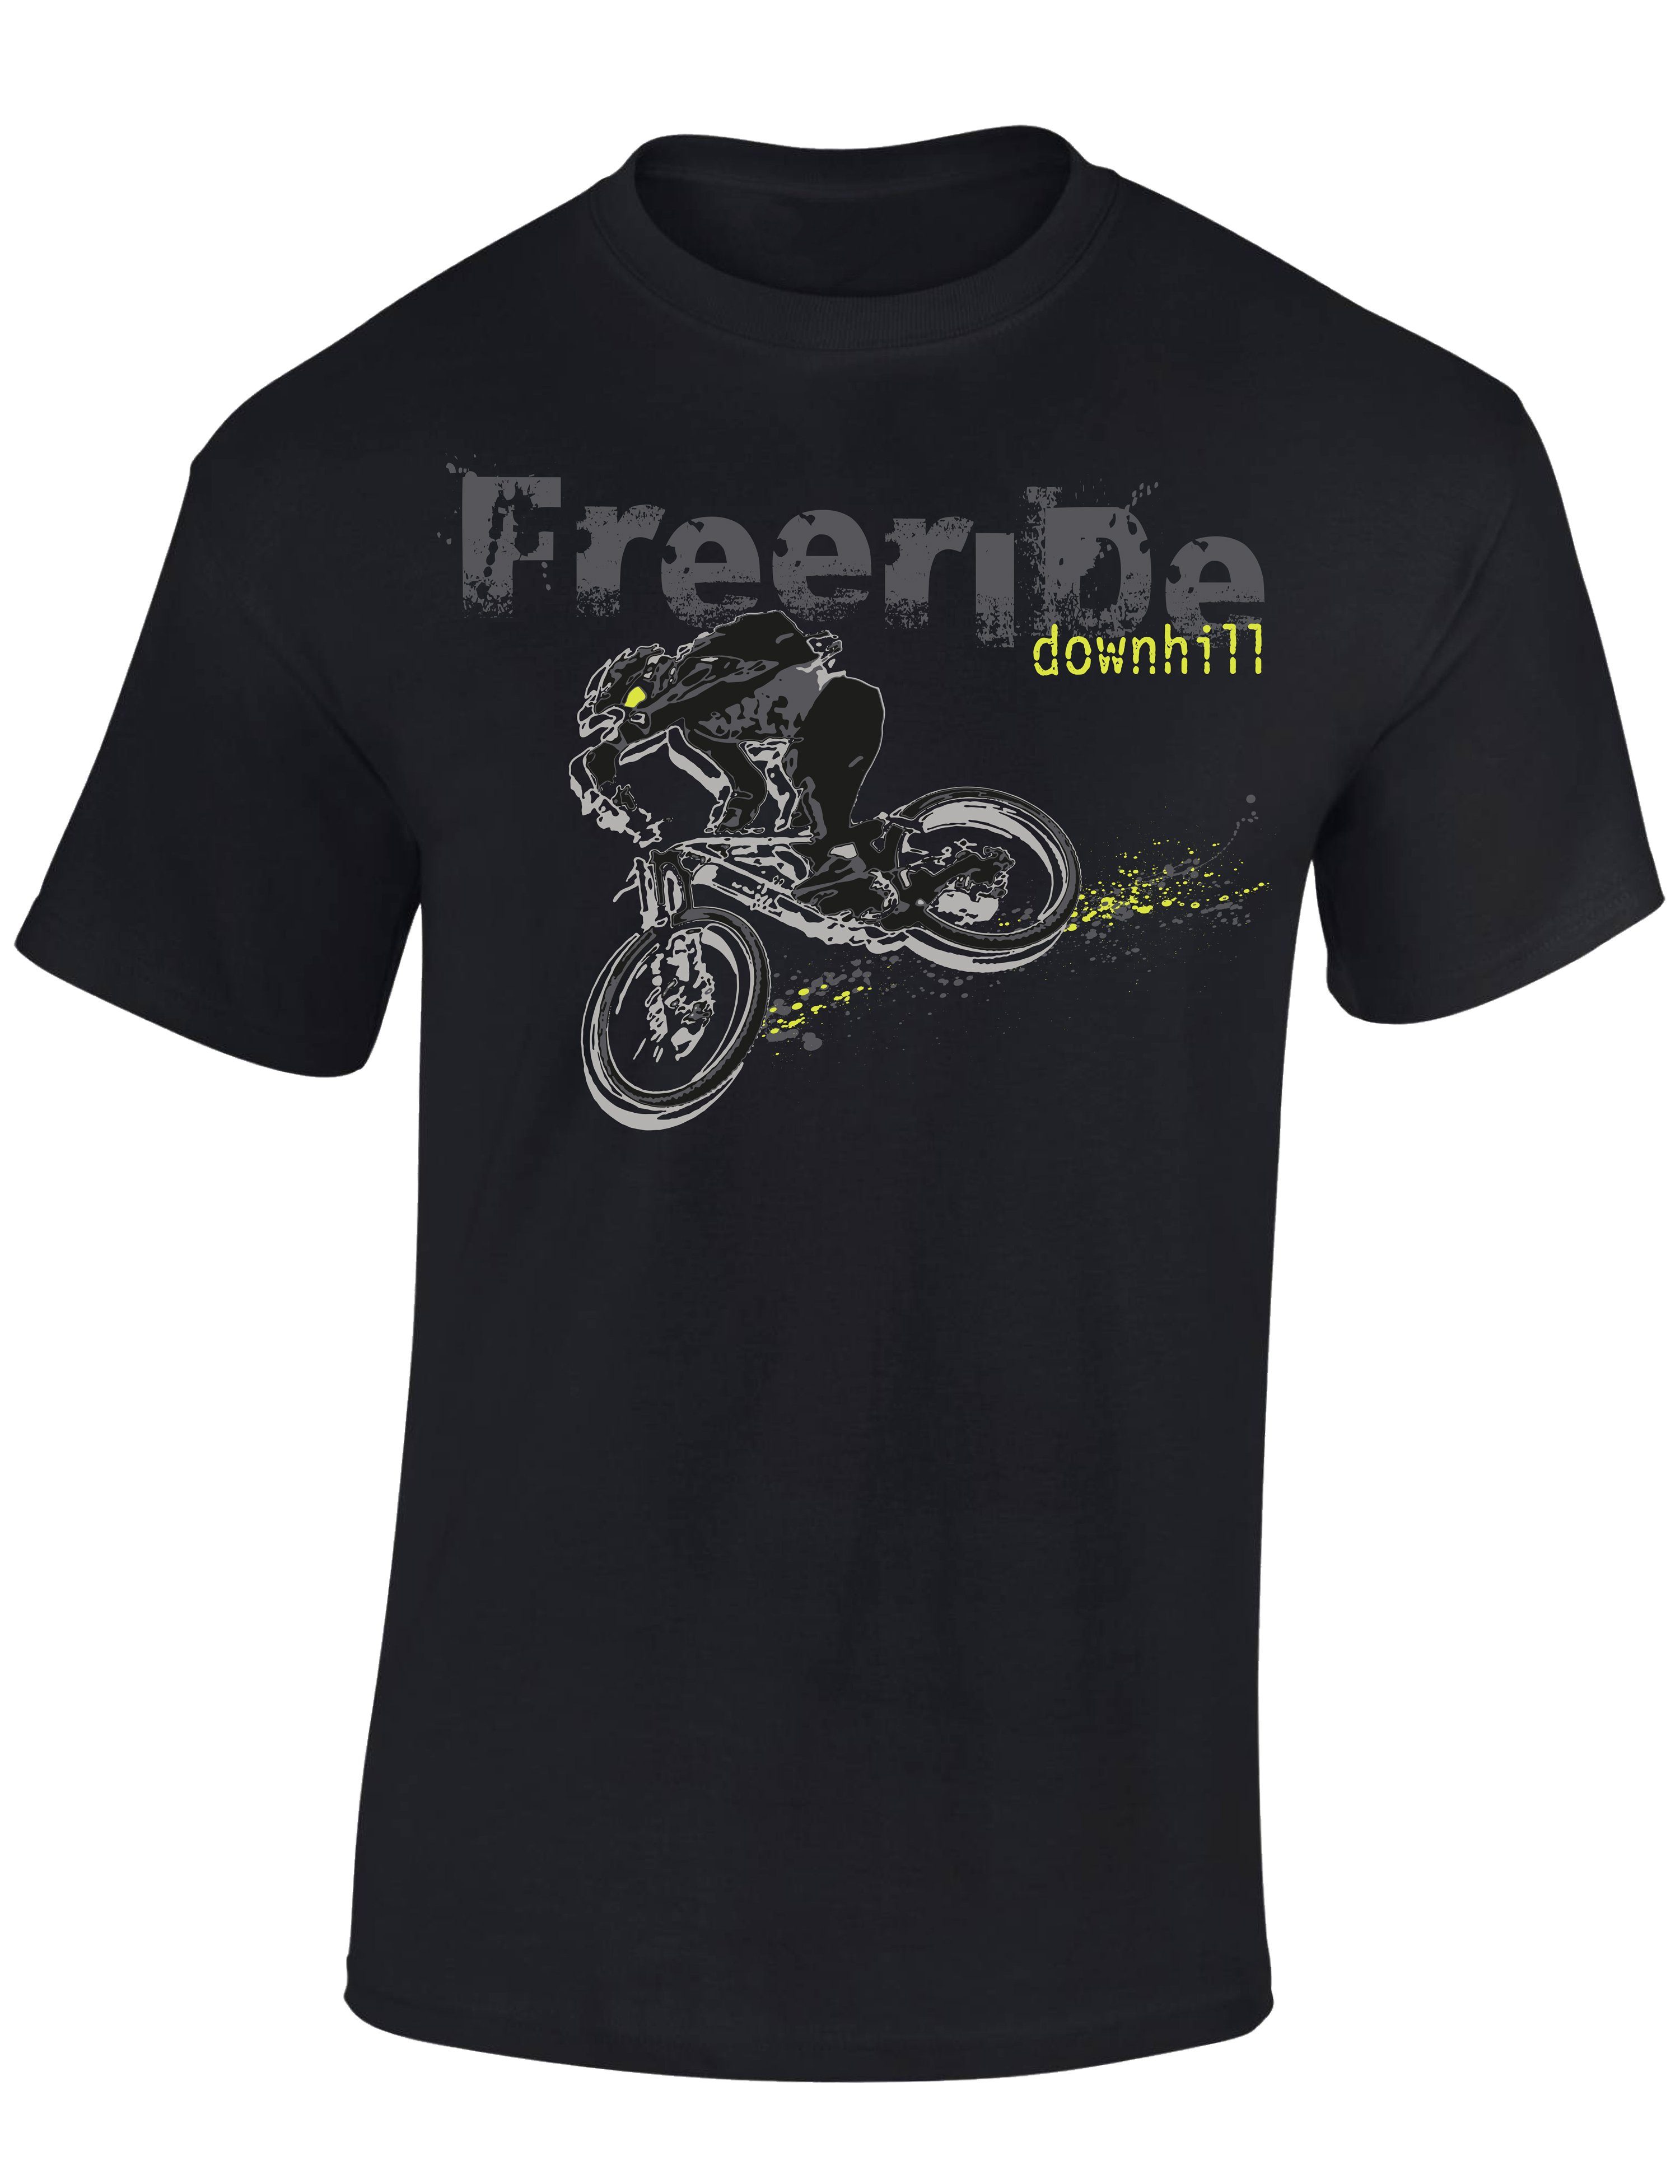 Baddery Print-Shirt Kinder T-Shirt: Freeride Downhill - Fahrrad Geschenk Jungen & Mädchen, hochwertiger Siebdruck, aus Baumwolle